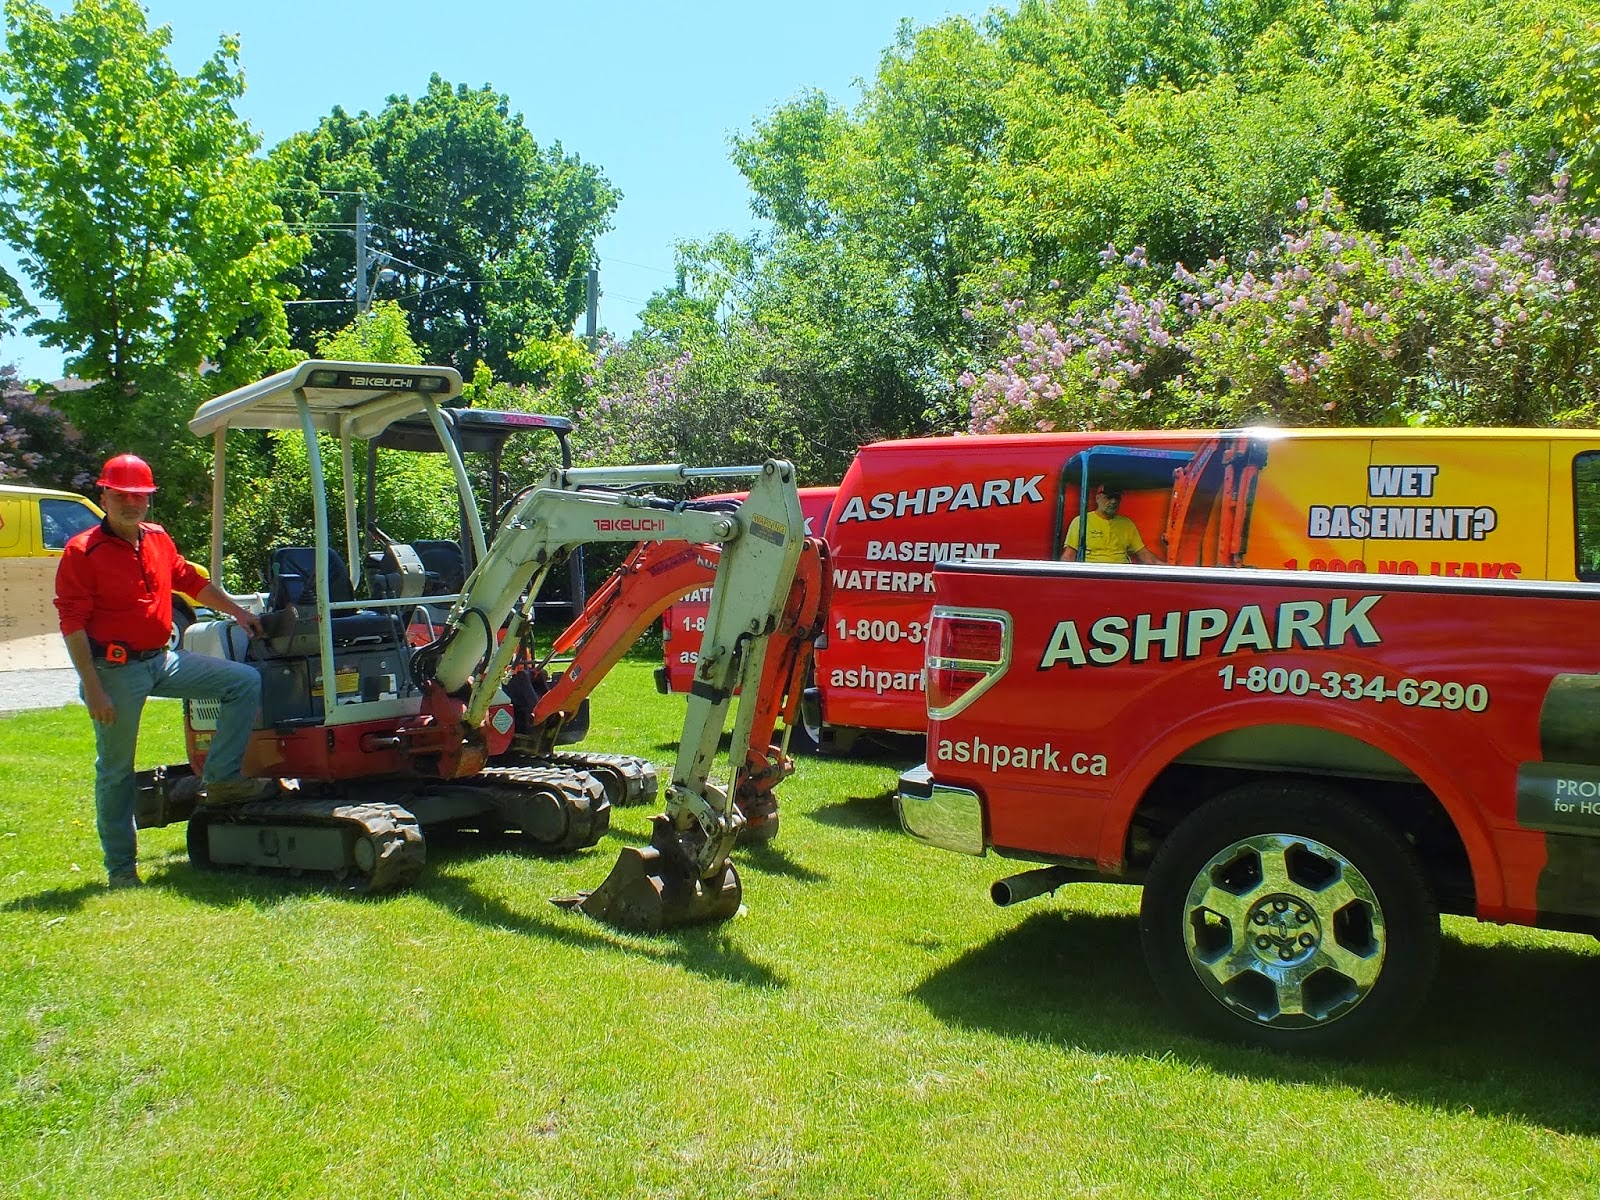 Ashpark Basement Waterproofing Contractors Ontario dial 1-800-334-6290